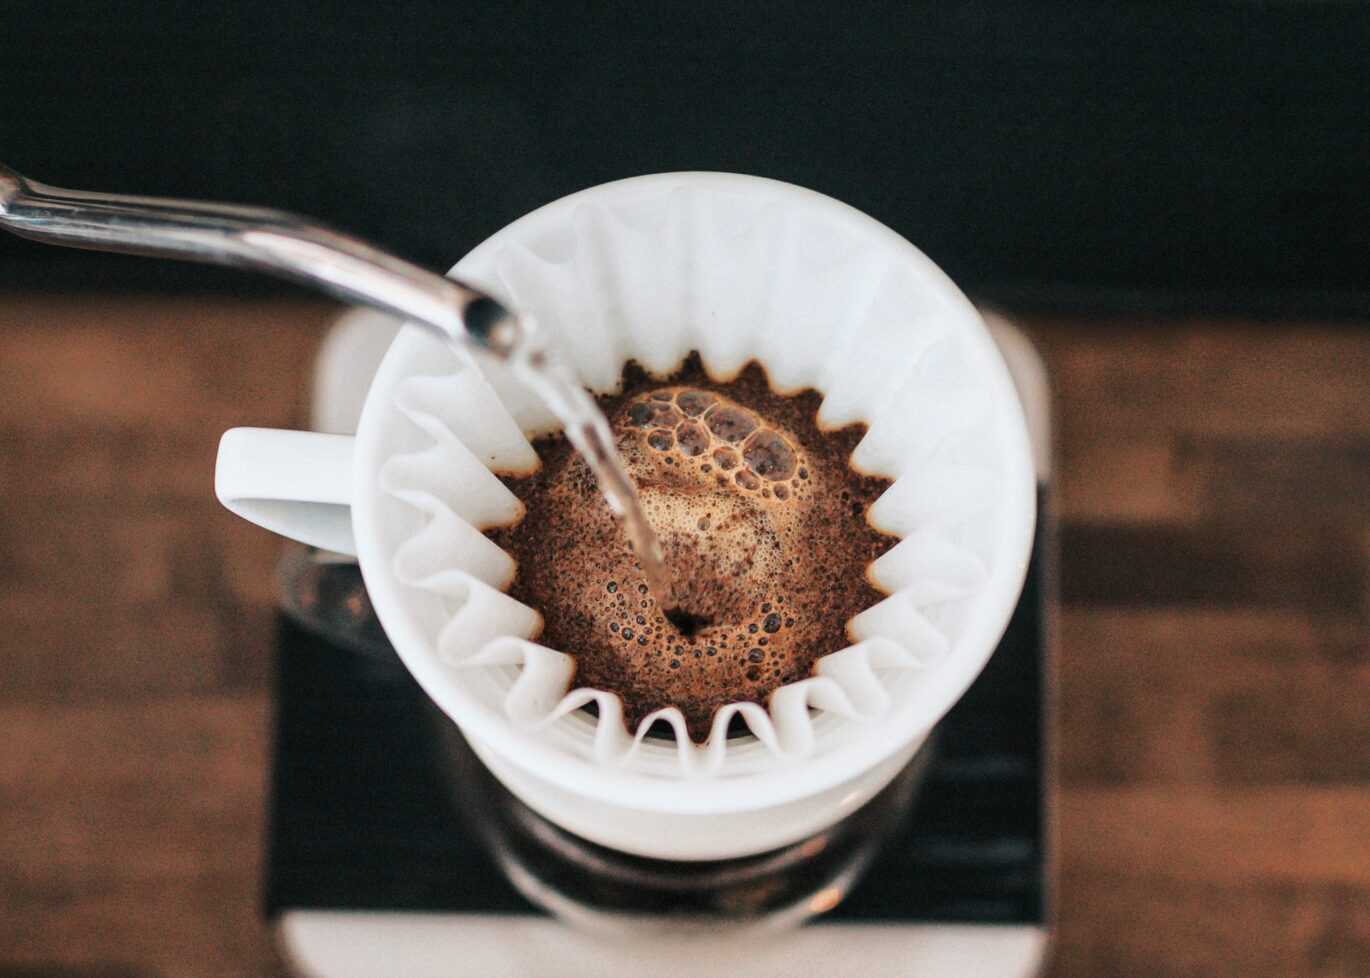 een bakje koffie dat wordt gezet. Wist je dat koffie gezondheidsvoordelen heeft?